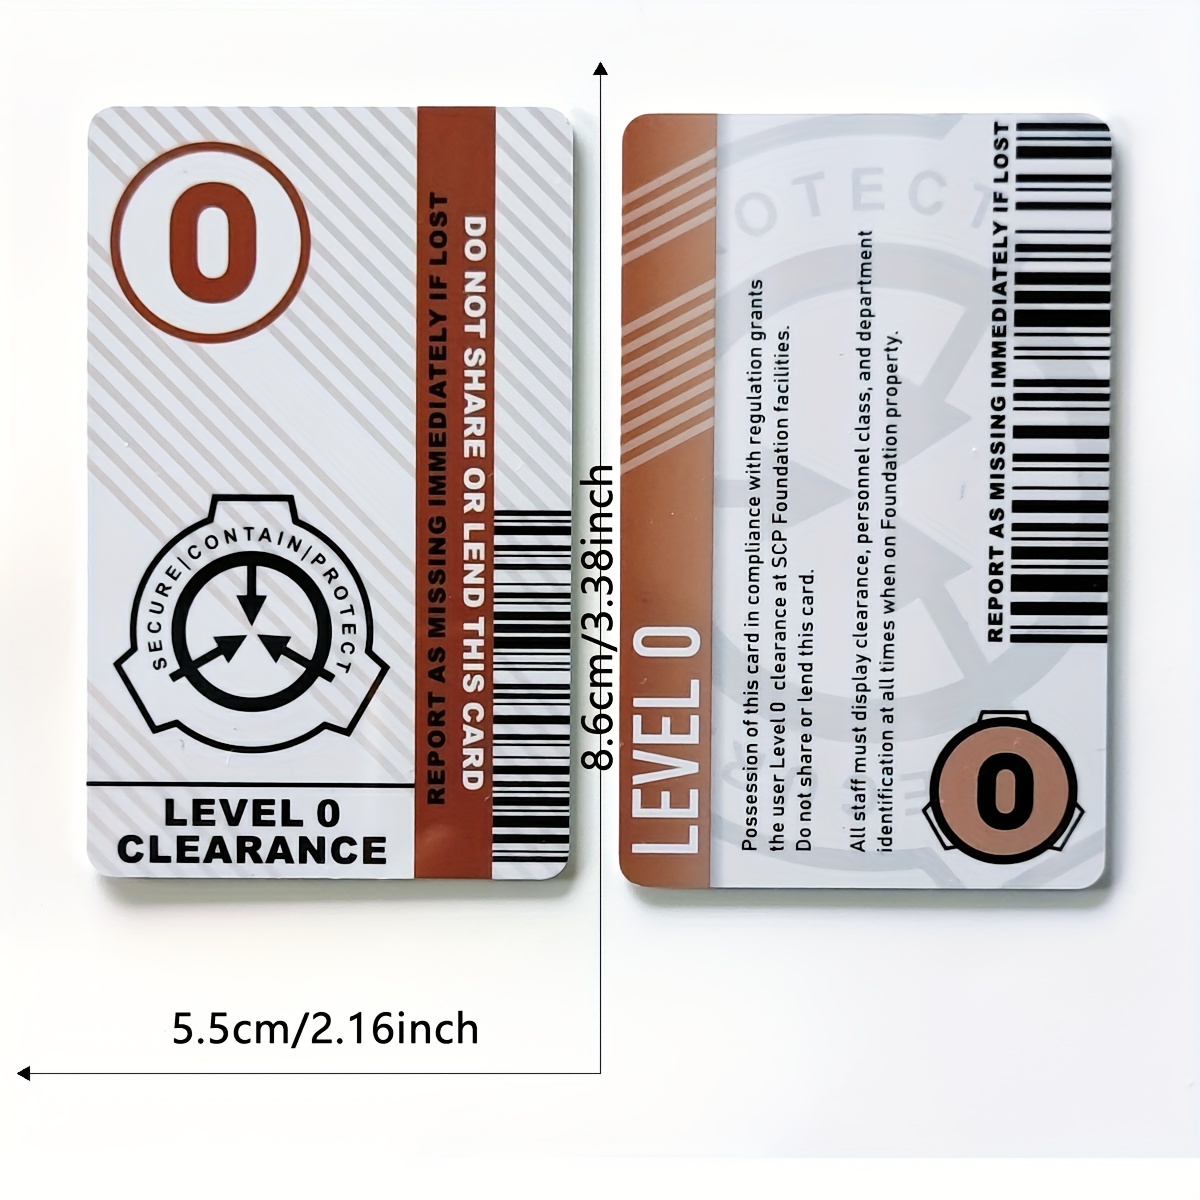 Custom SCP FOUNDATION Access Card 